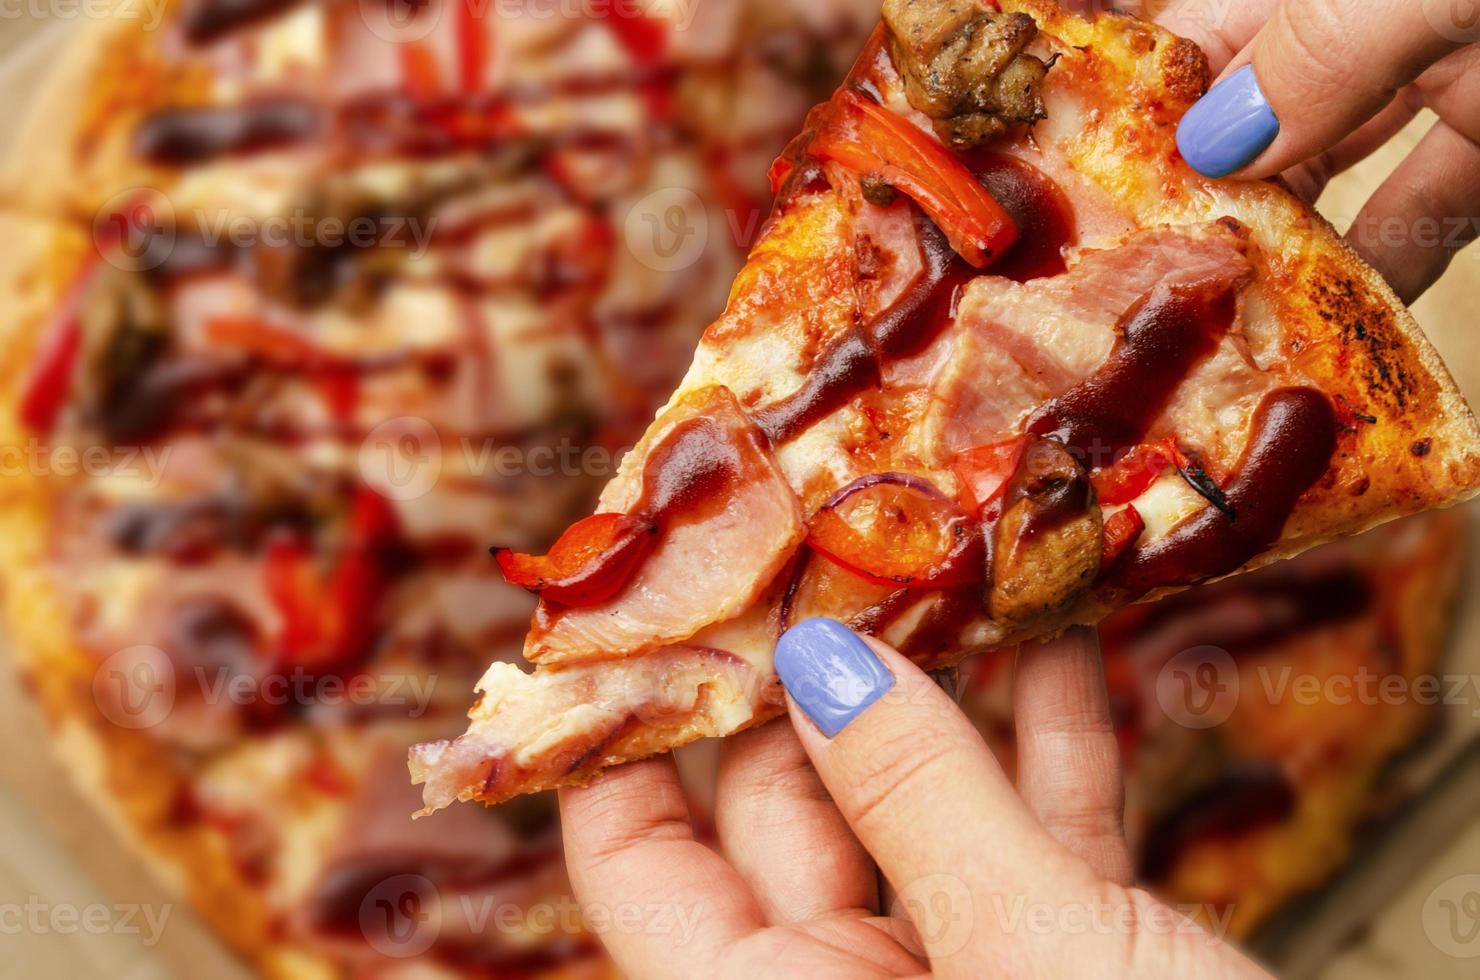 garota pega uma fatia de pizza. comida rápida foto